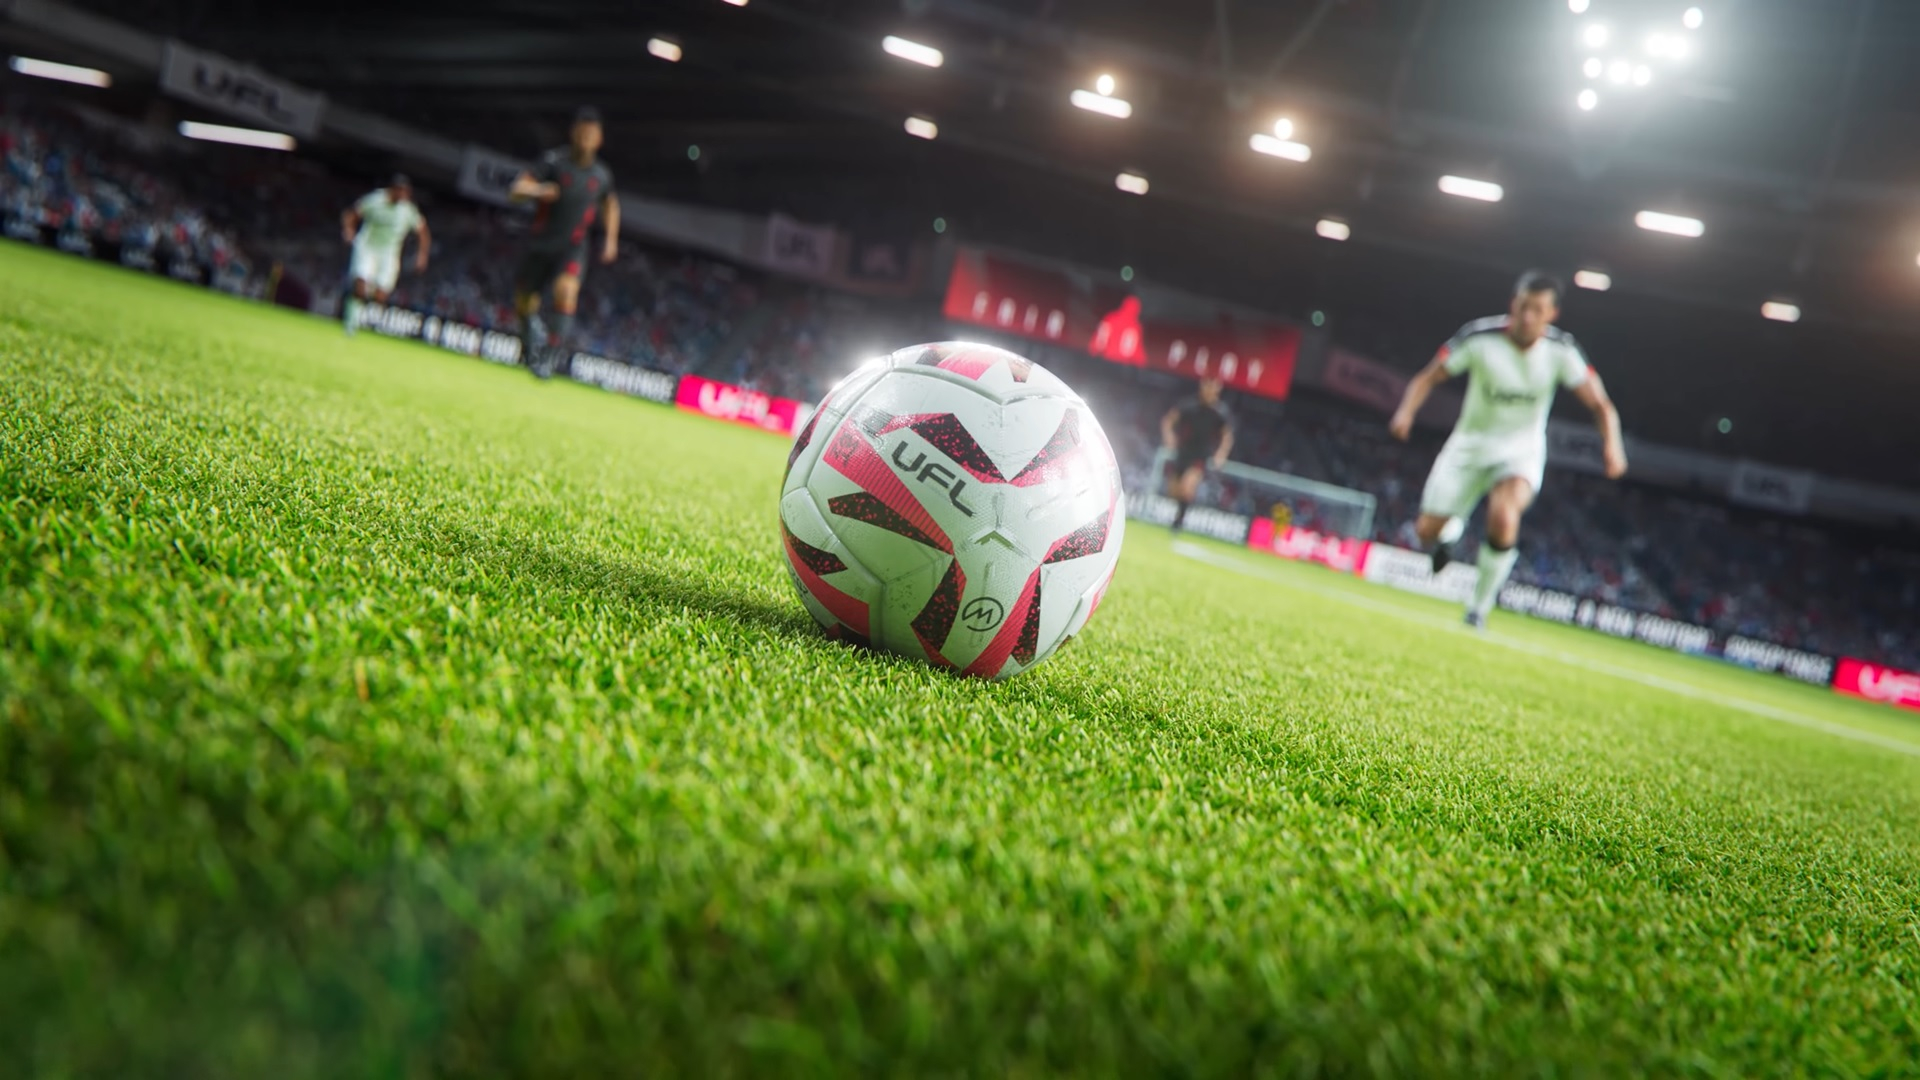 Футбольный симулятор UFL выйдет во второй половине 2023 года — его называют конкурентом FIFA и eFootball